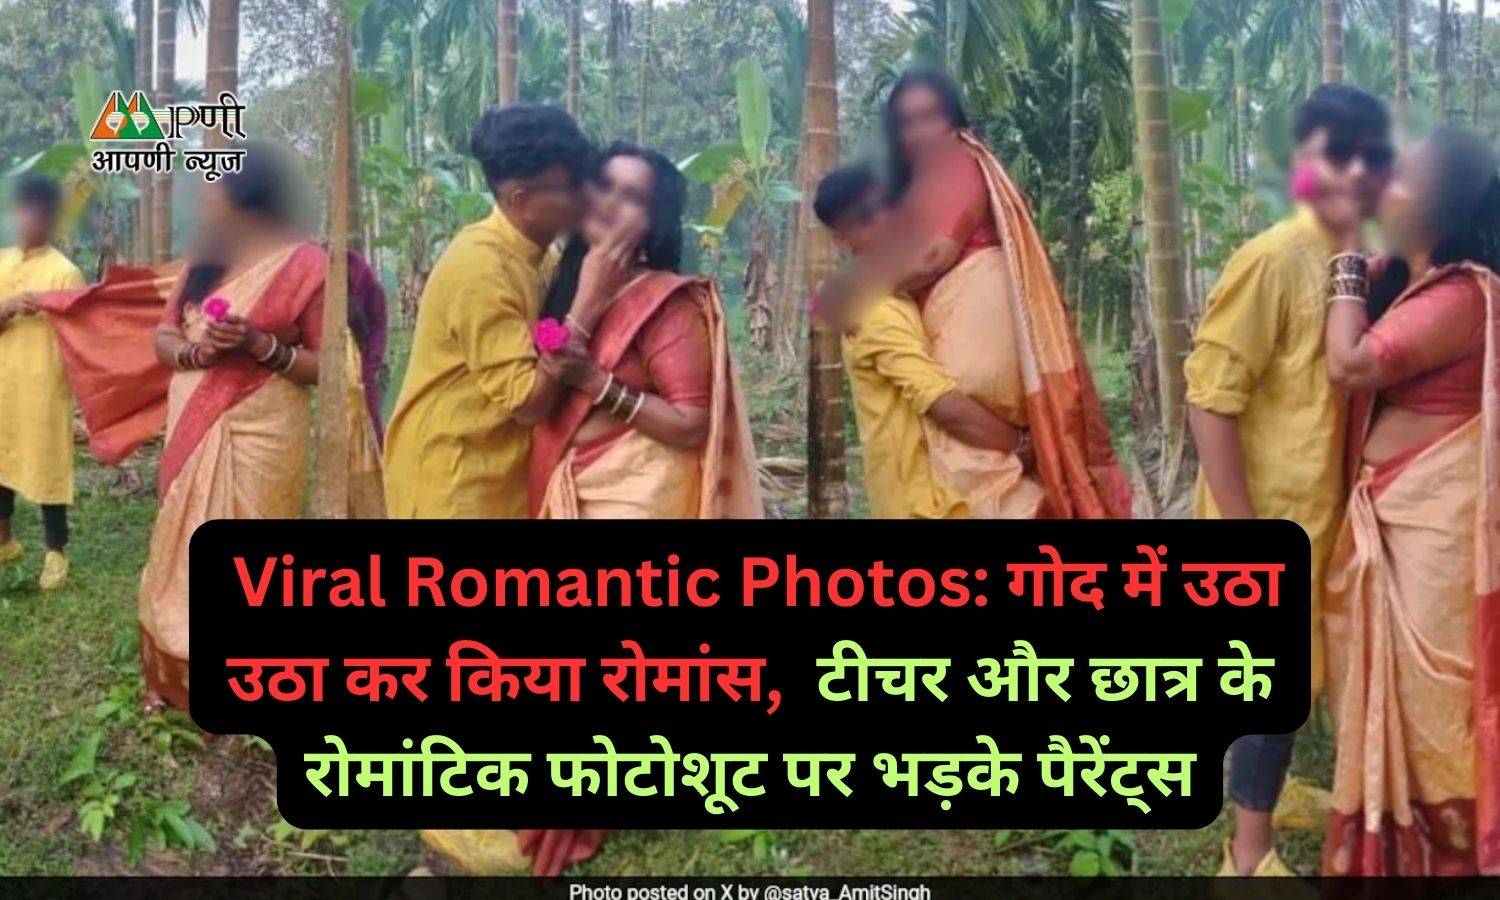 Viral Romantic Photos: गोद में उठा उठा कर किया रोमांस, टीचर और छात्र के रोमांटिक फोटोशूट पर भड़के पैरेंट्स